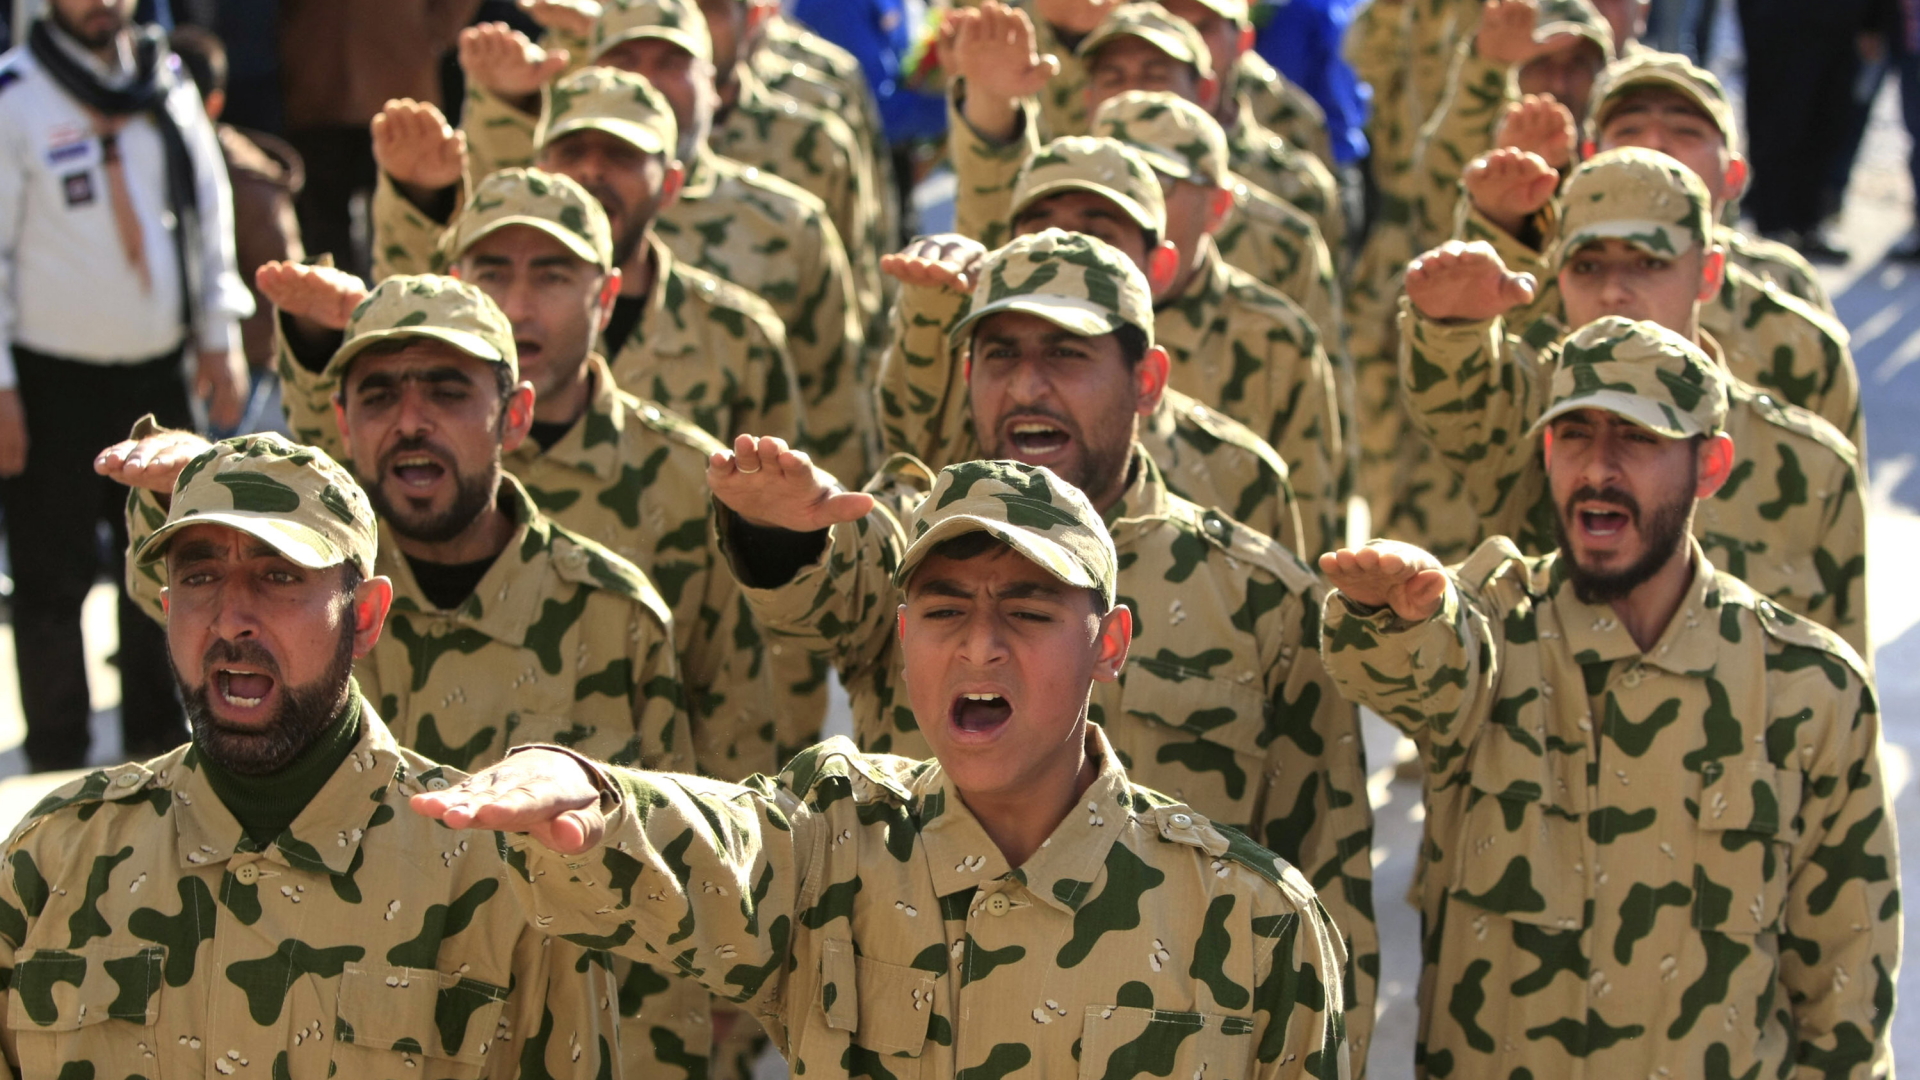 Libanesische Hisbollah-Truppen nehmen an einer Parade teil